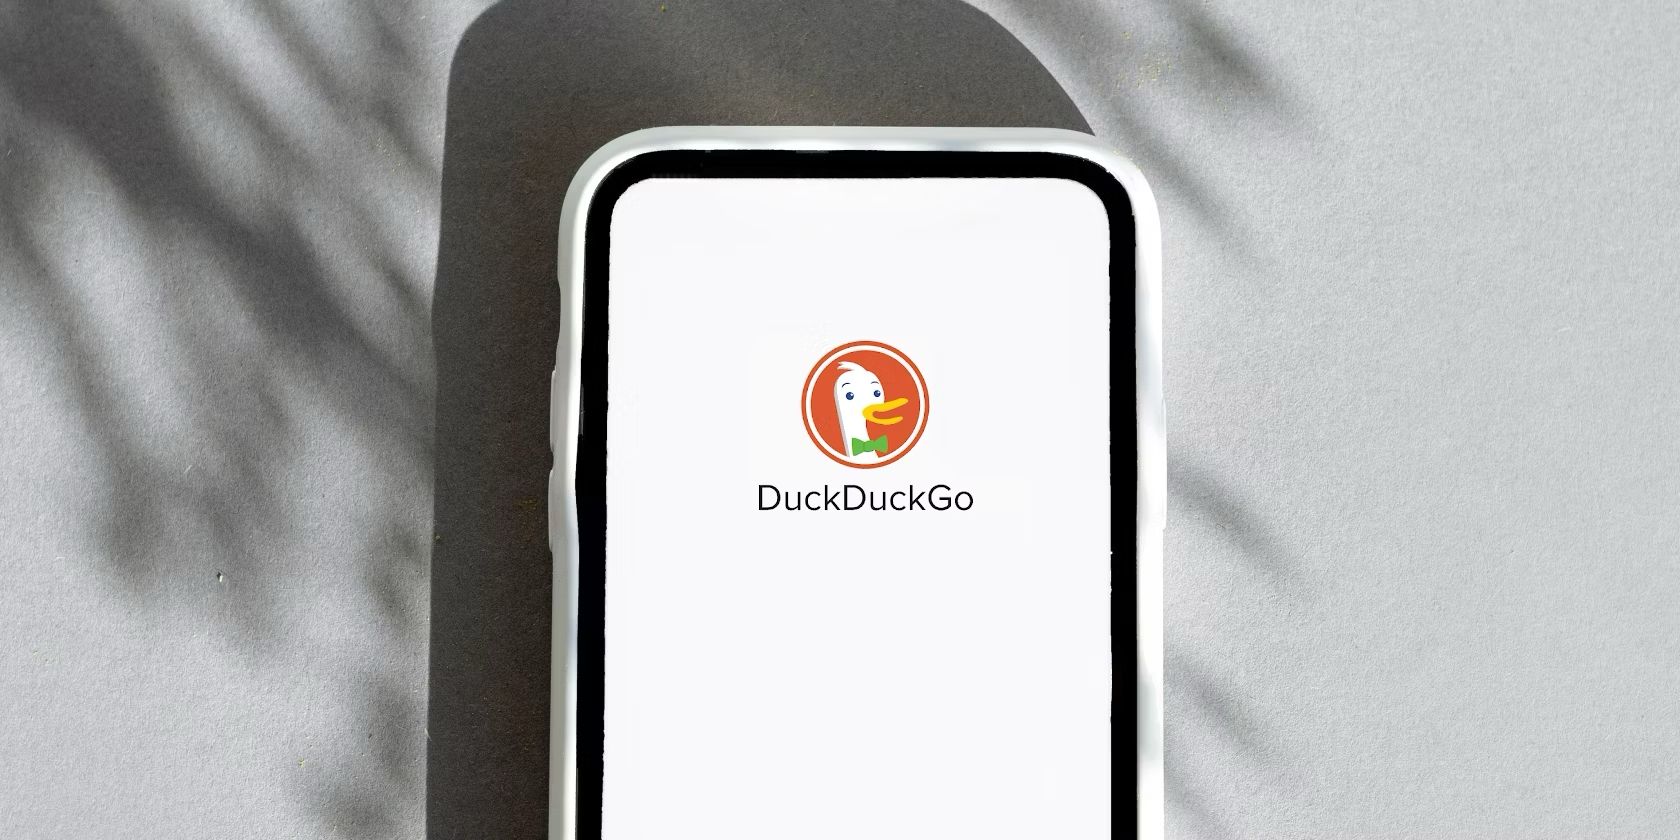 logo duckduckgo di smartphone